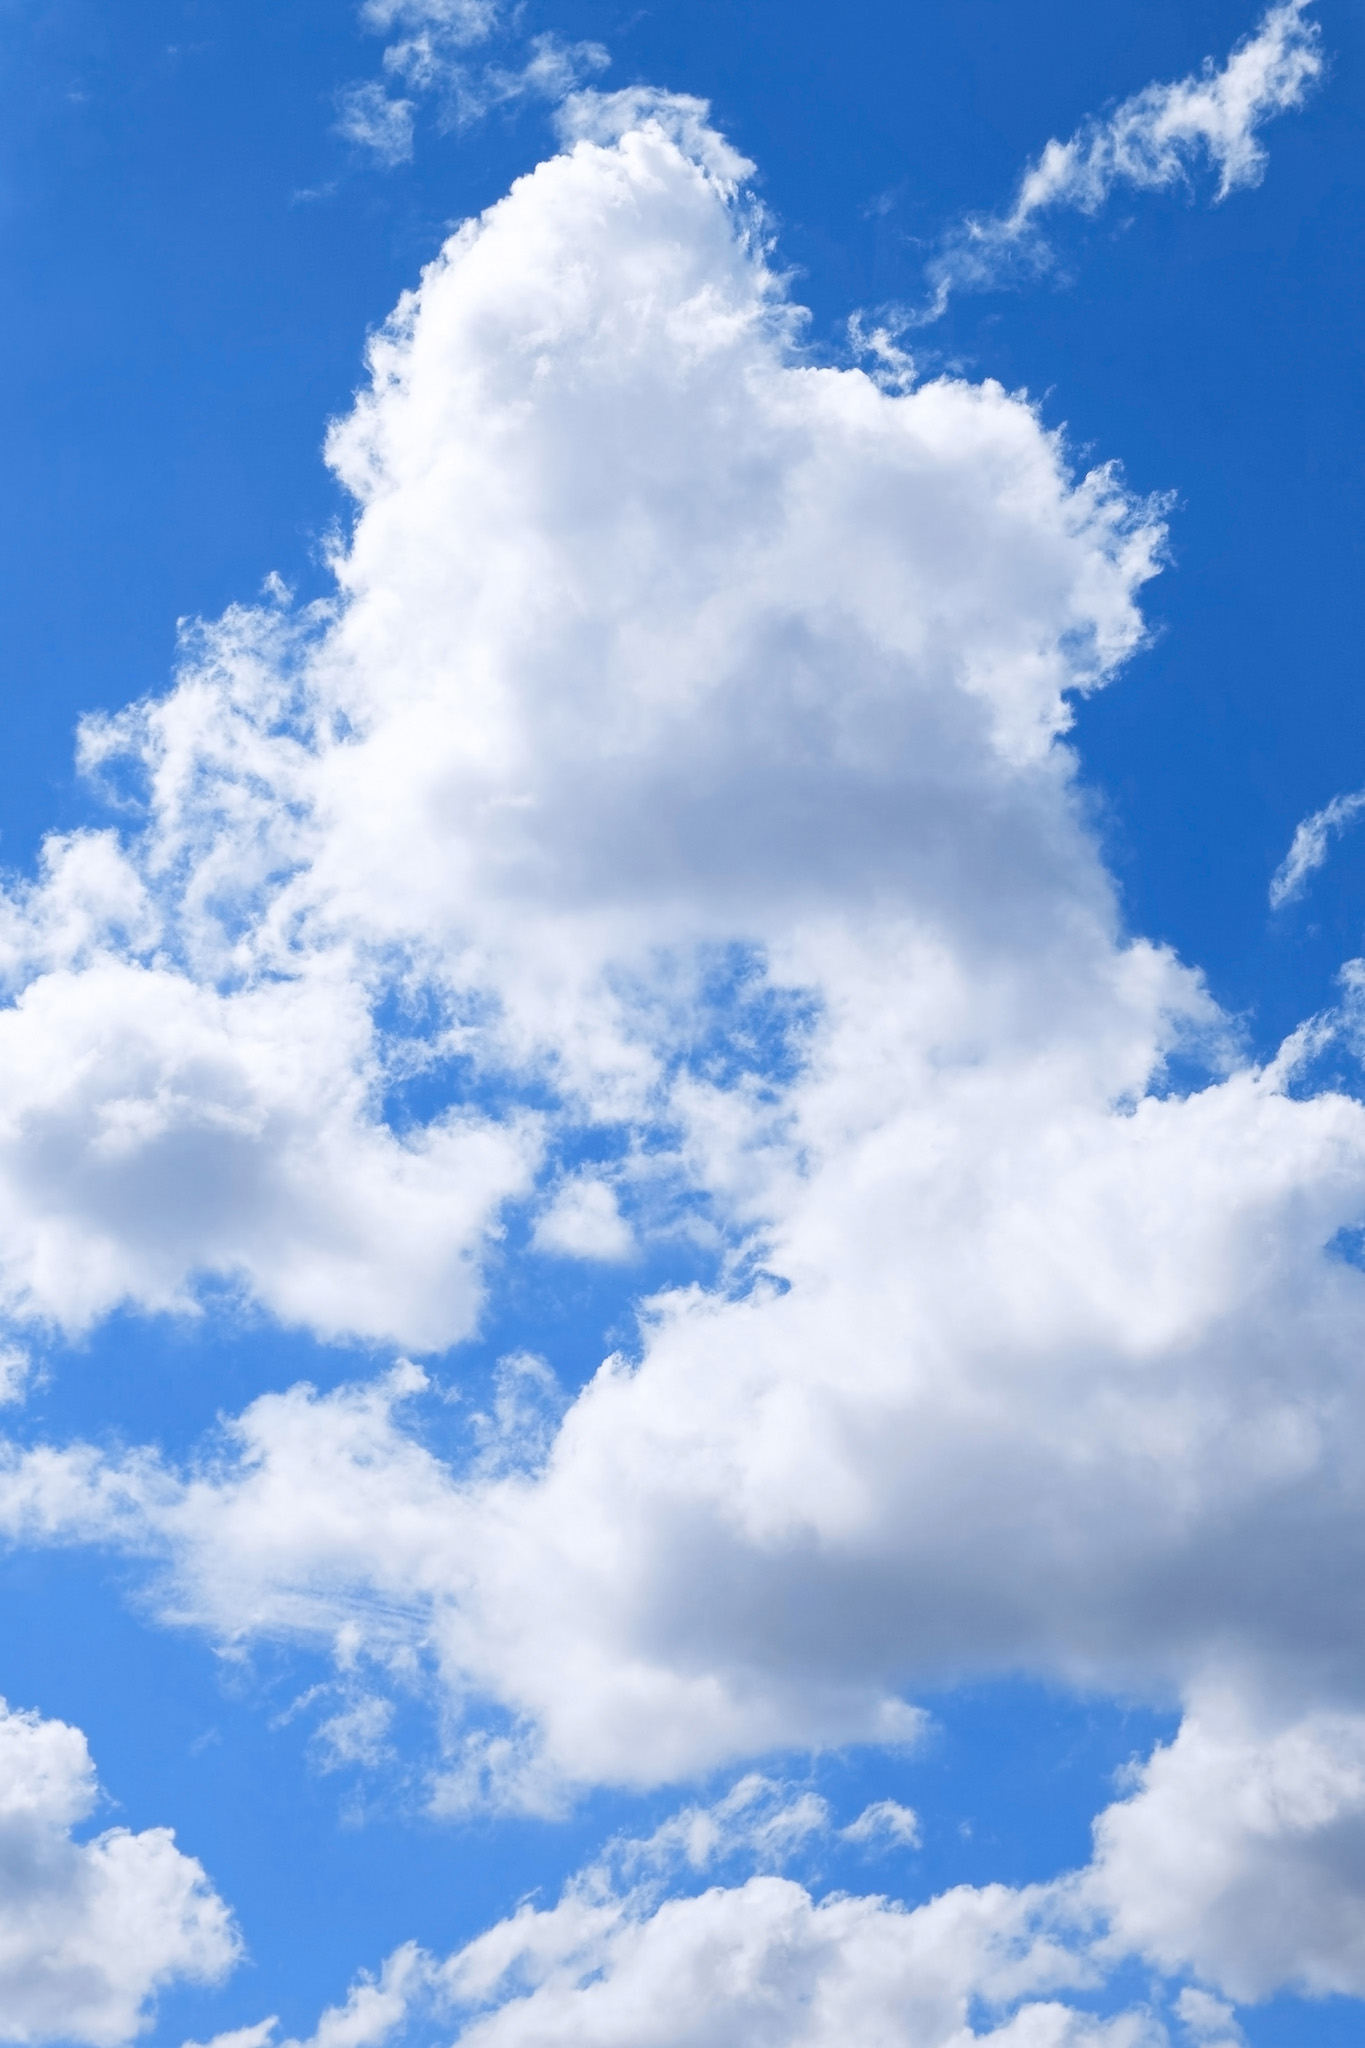 高々と登る雲と清爽な青空 の画像素材を無料ダウンロード 1 フリー